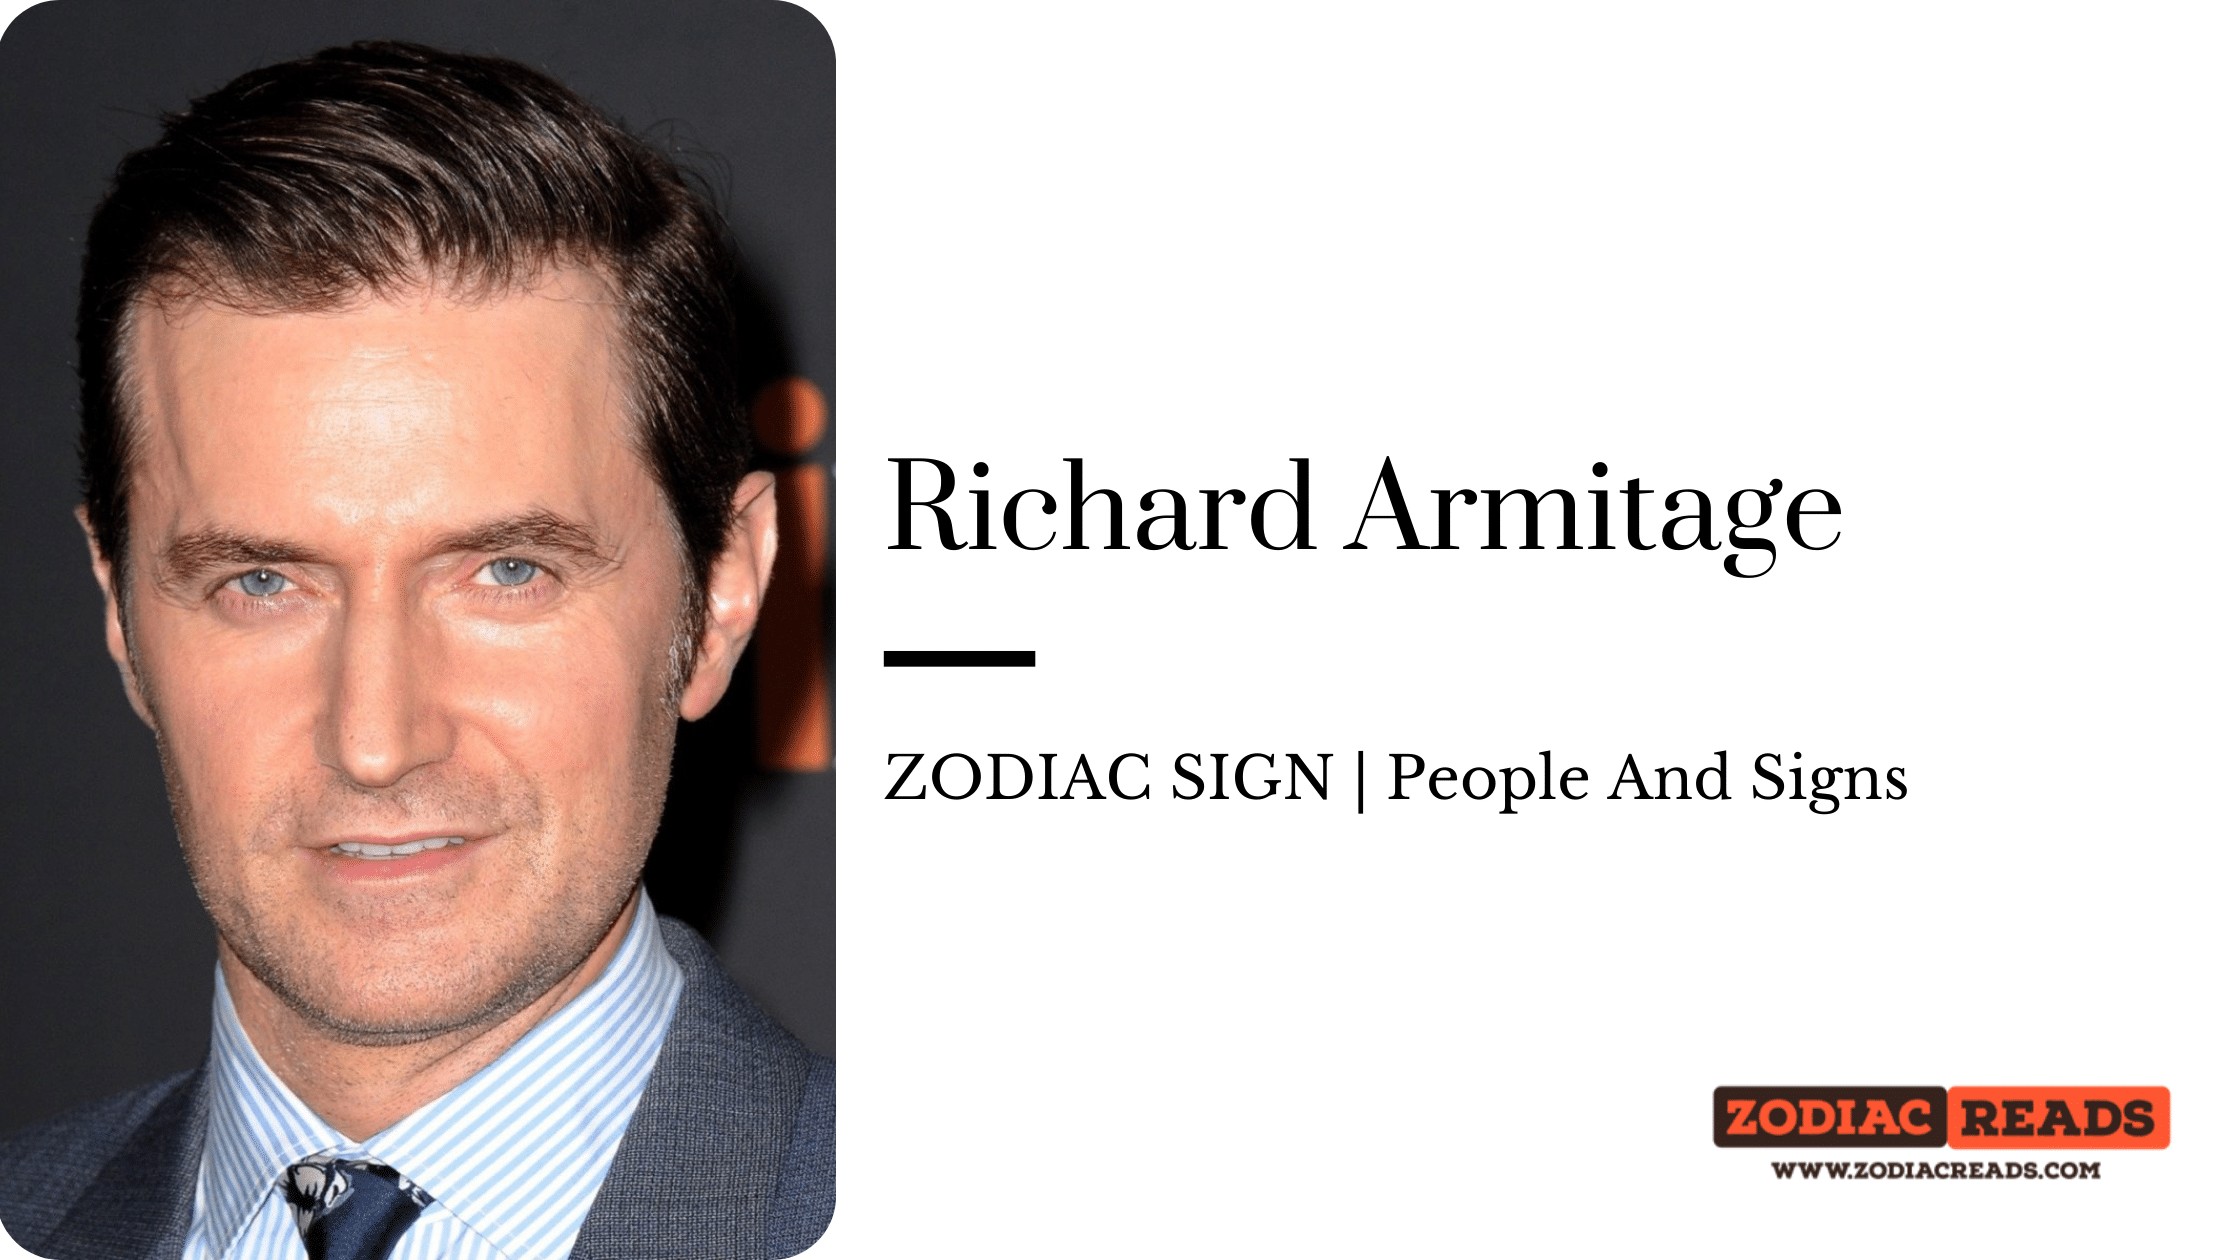 Richard Armitage zodiac